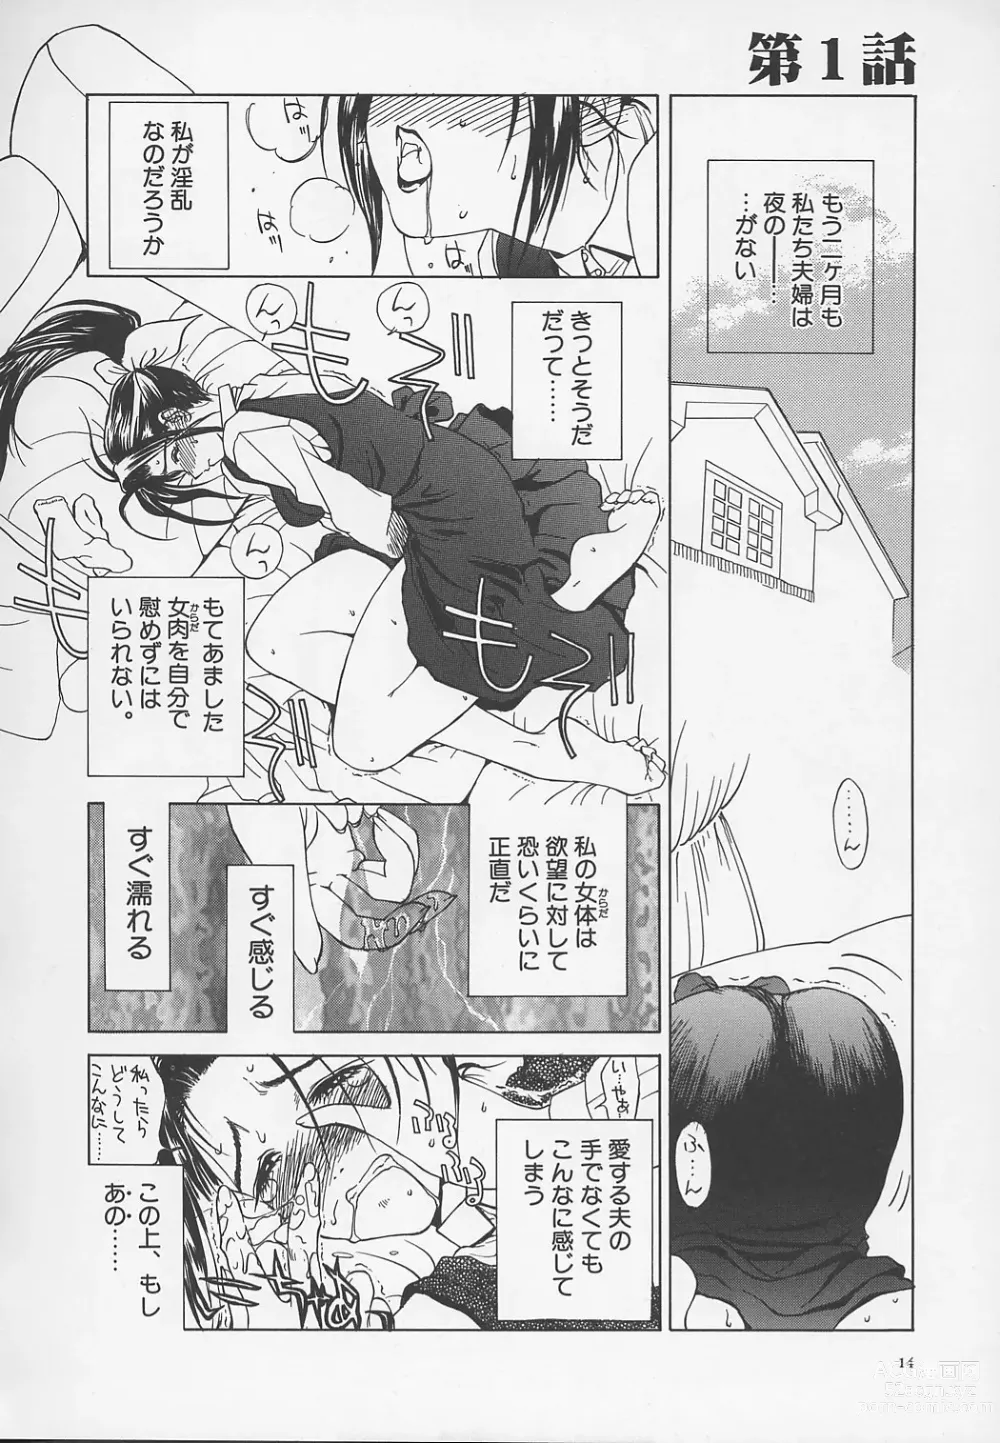 Page 17 of manga Enbo -Kanzenban-